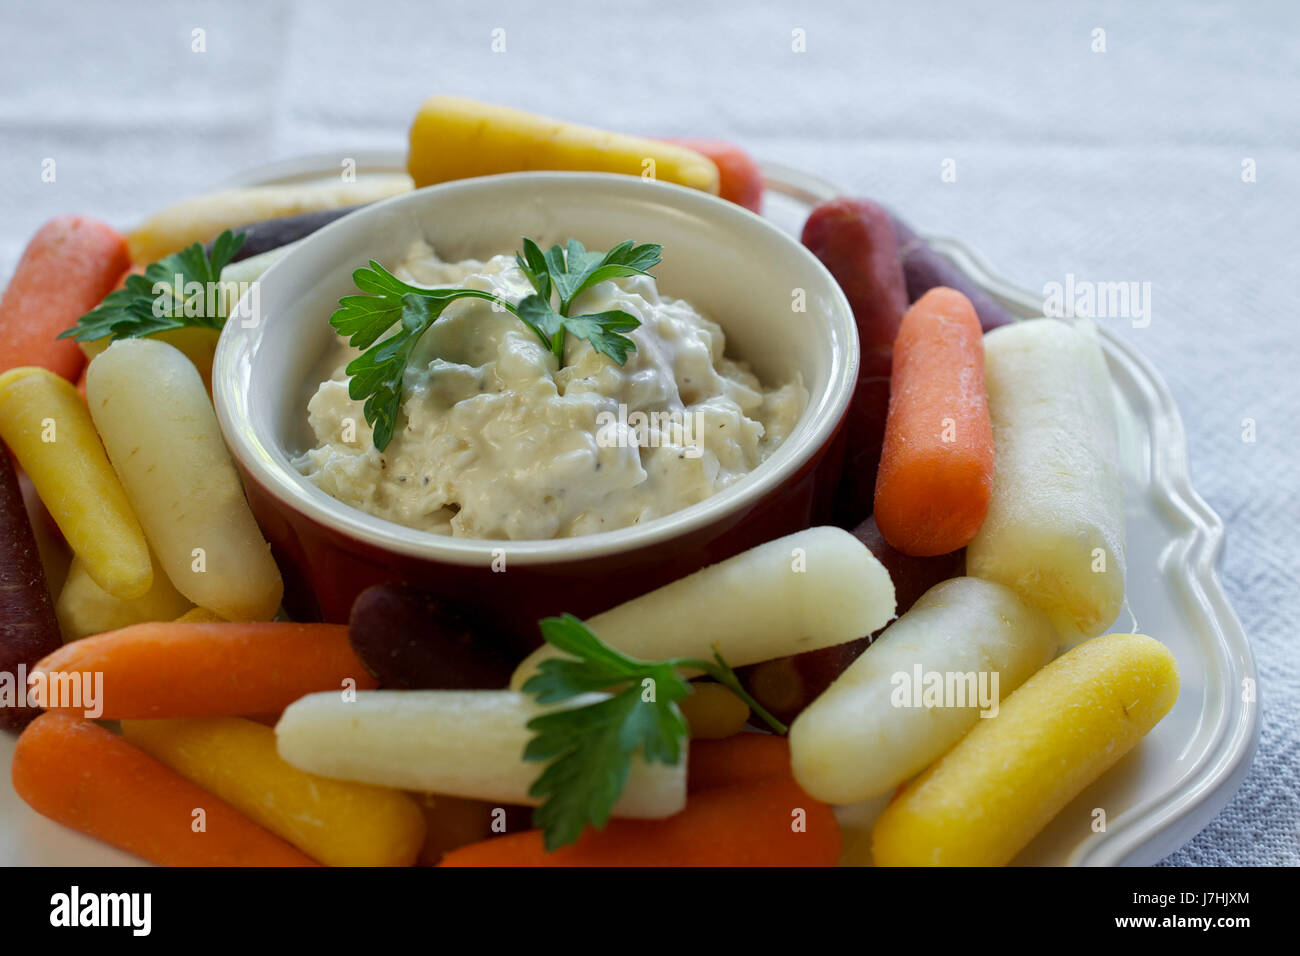 Gros plan sur assiette de carottes arc-en-ciel bébé blanc sur plaque sur nappe blanche, servi avec trempette à l'oignon yaourt grec Banque D'Images